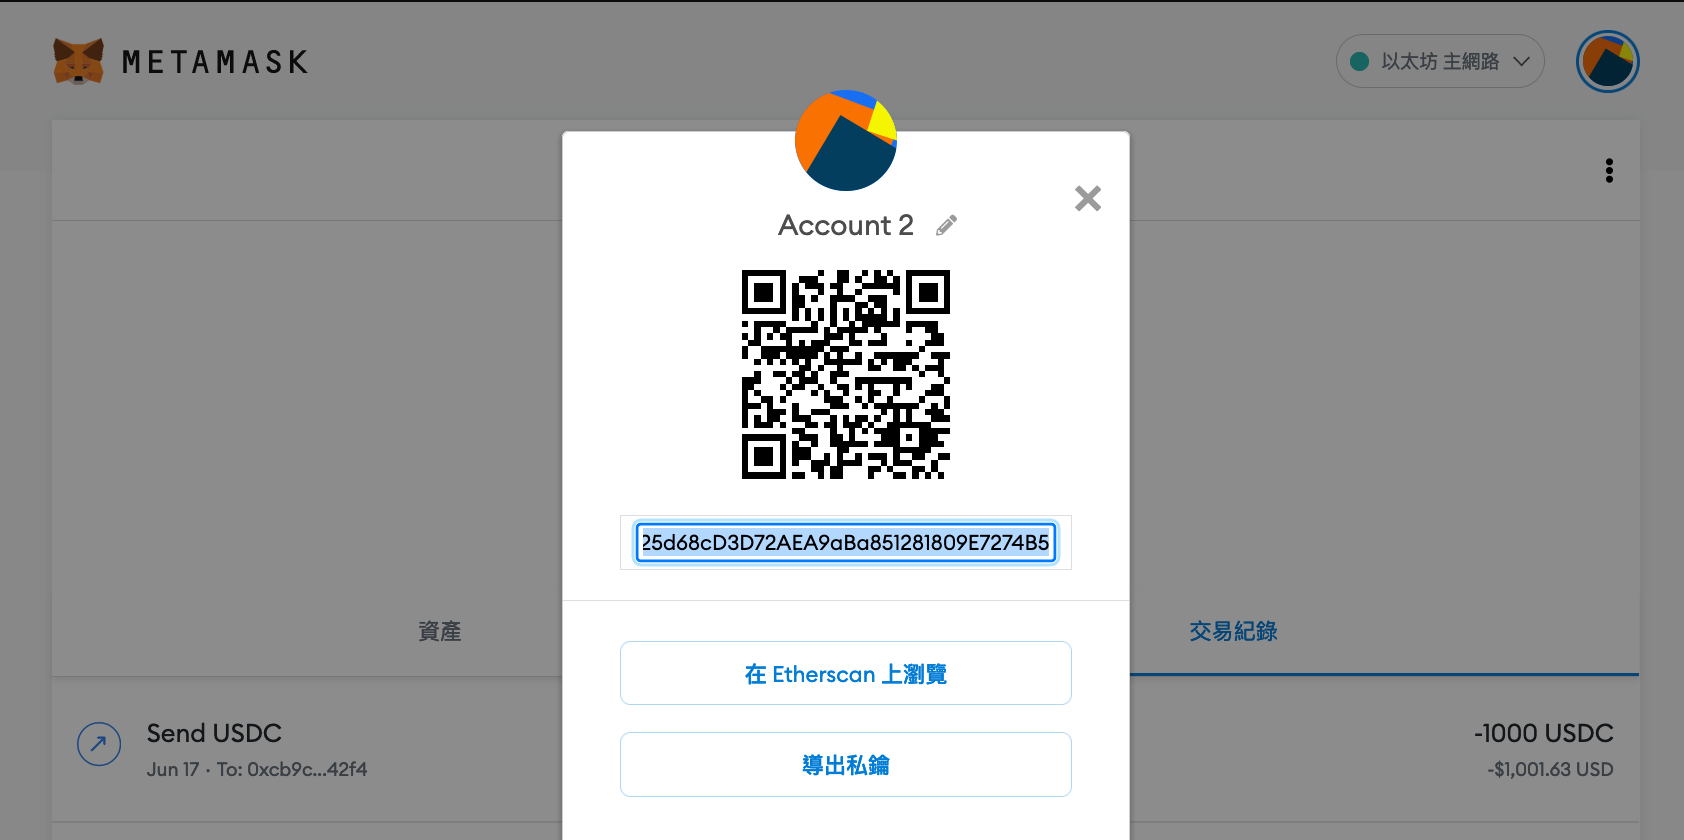 加密貨幣錢包-推薦MetaMask虛擬貨幣狐狸錢包台灣申請地址教學!什麼是冷錢包熱錢包?